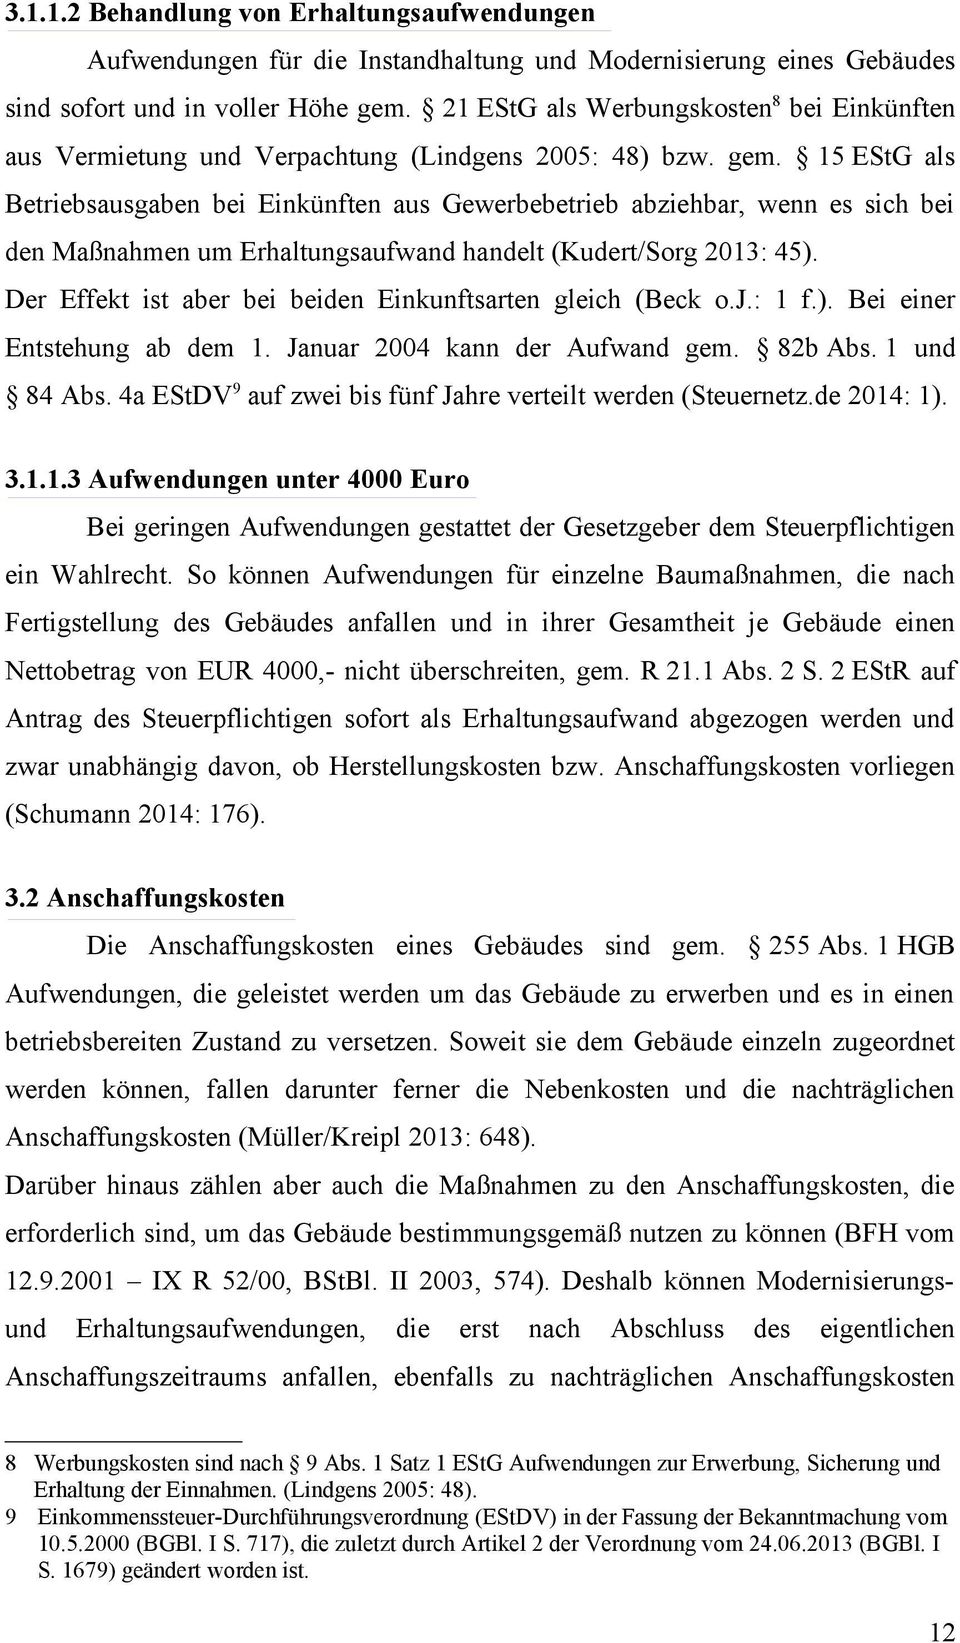 15 EStG als Betriebsausgaben bei Einkünften aus Gewerbebetrieb abziehbar, wenn es sich bei den Maßnahmen um Erhaltungsaufwand handelt (Kudert/Sorg 2013: 45).